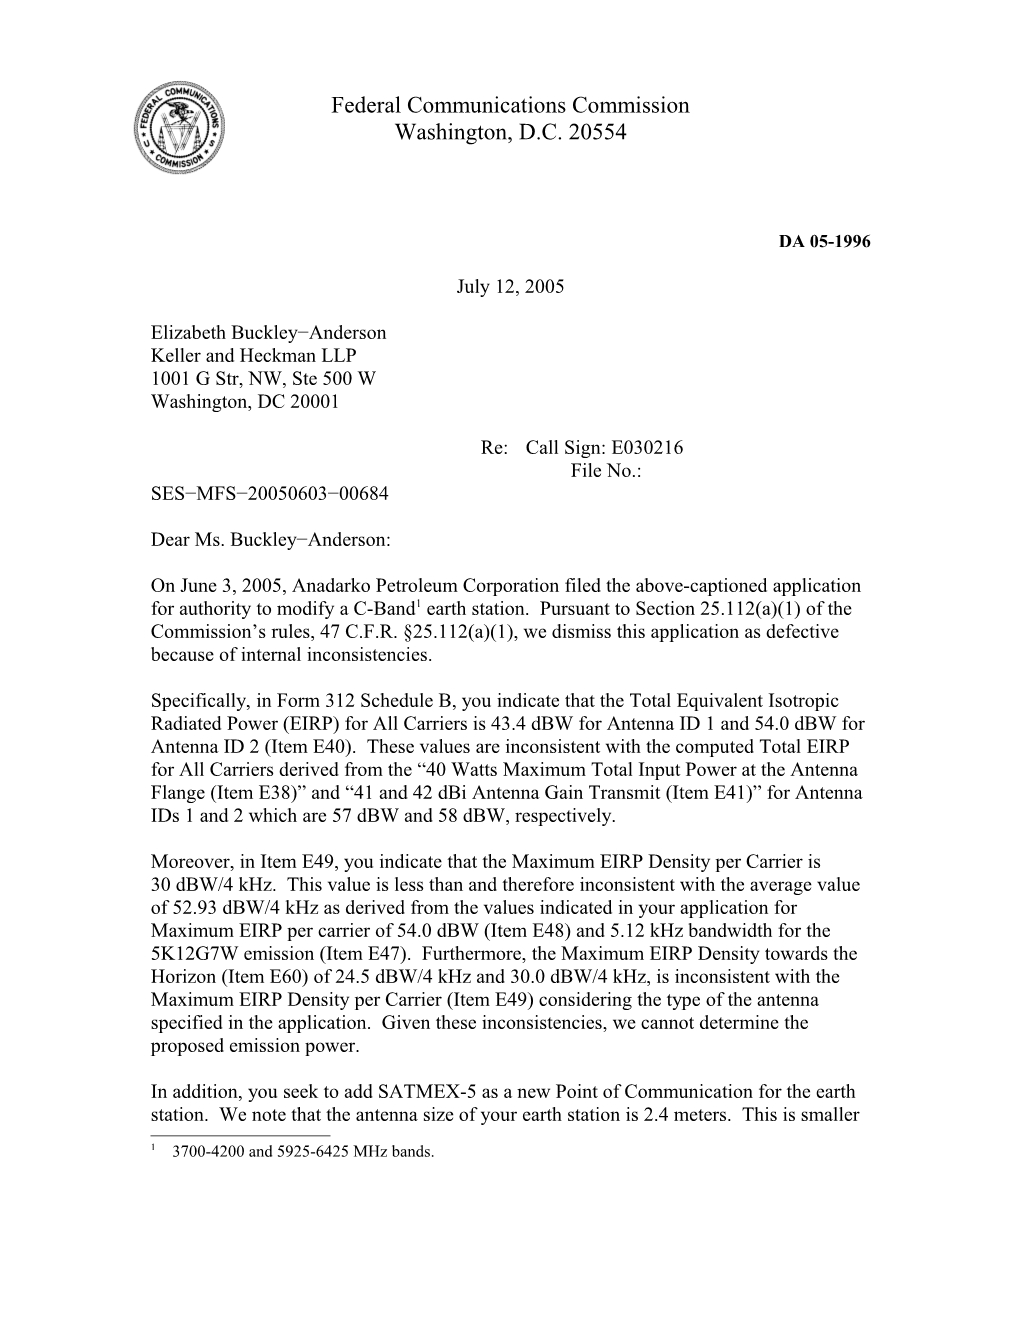 Federal Communications Commission DA 05-1996